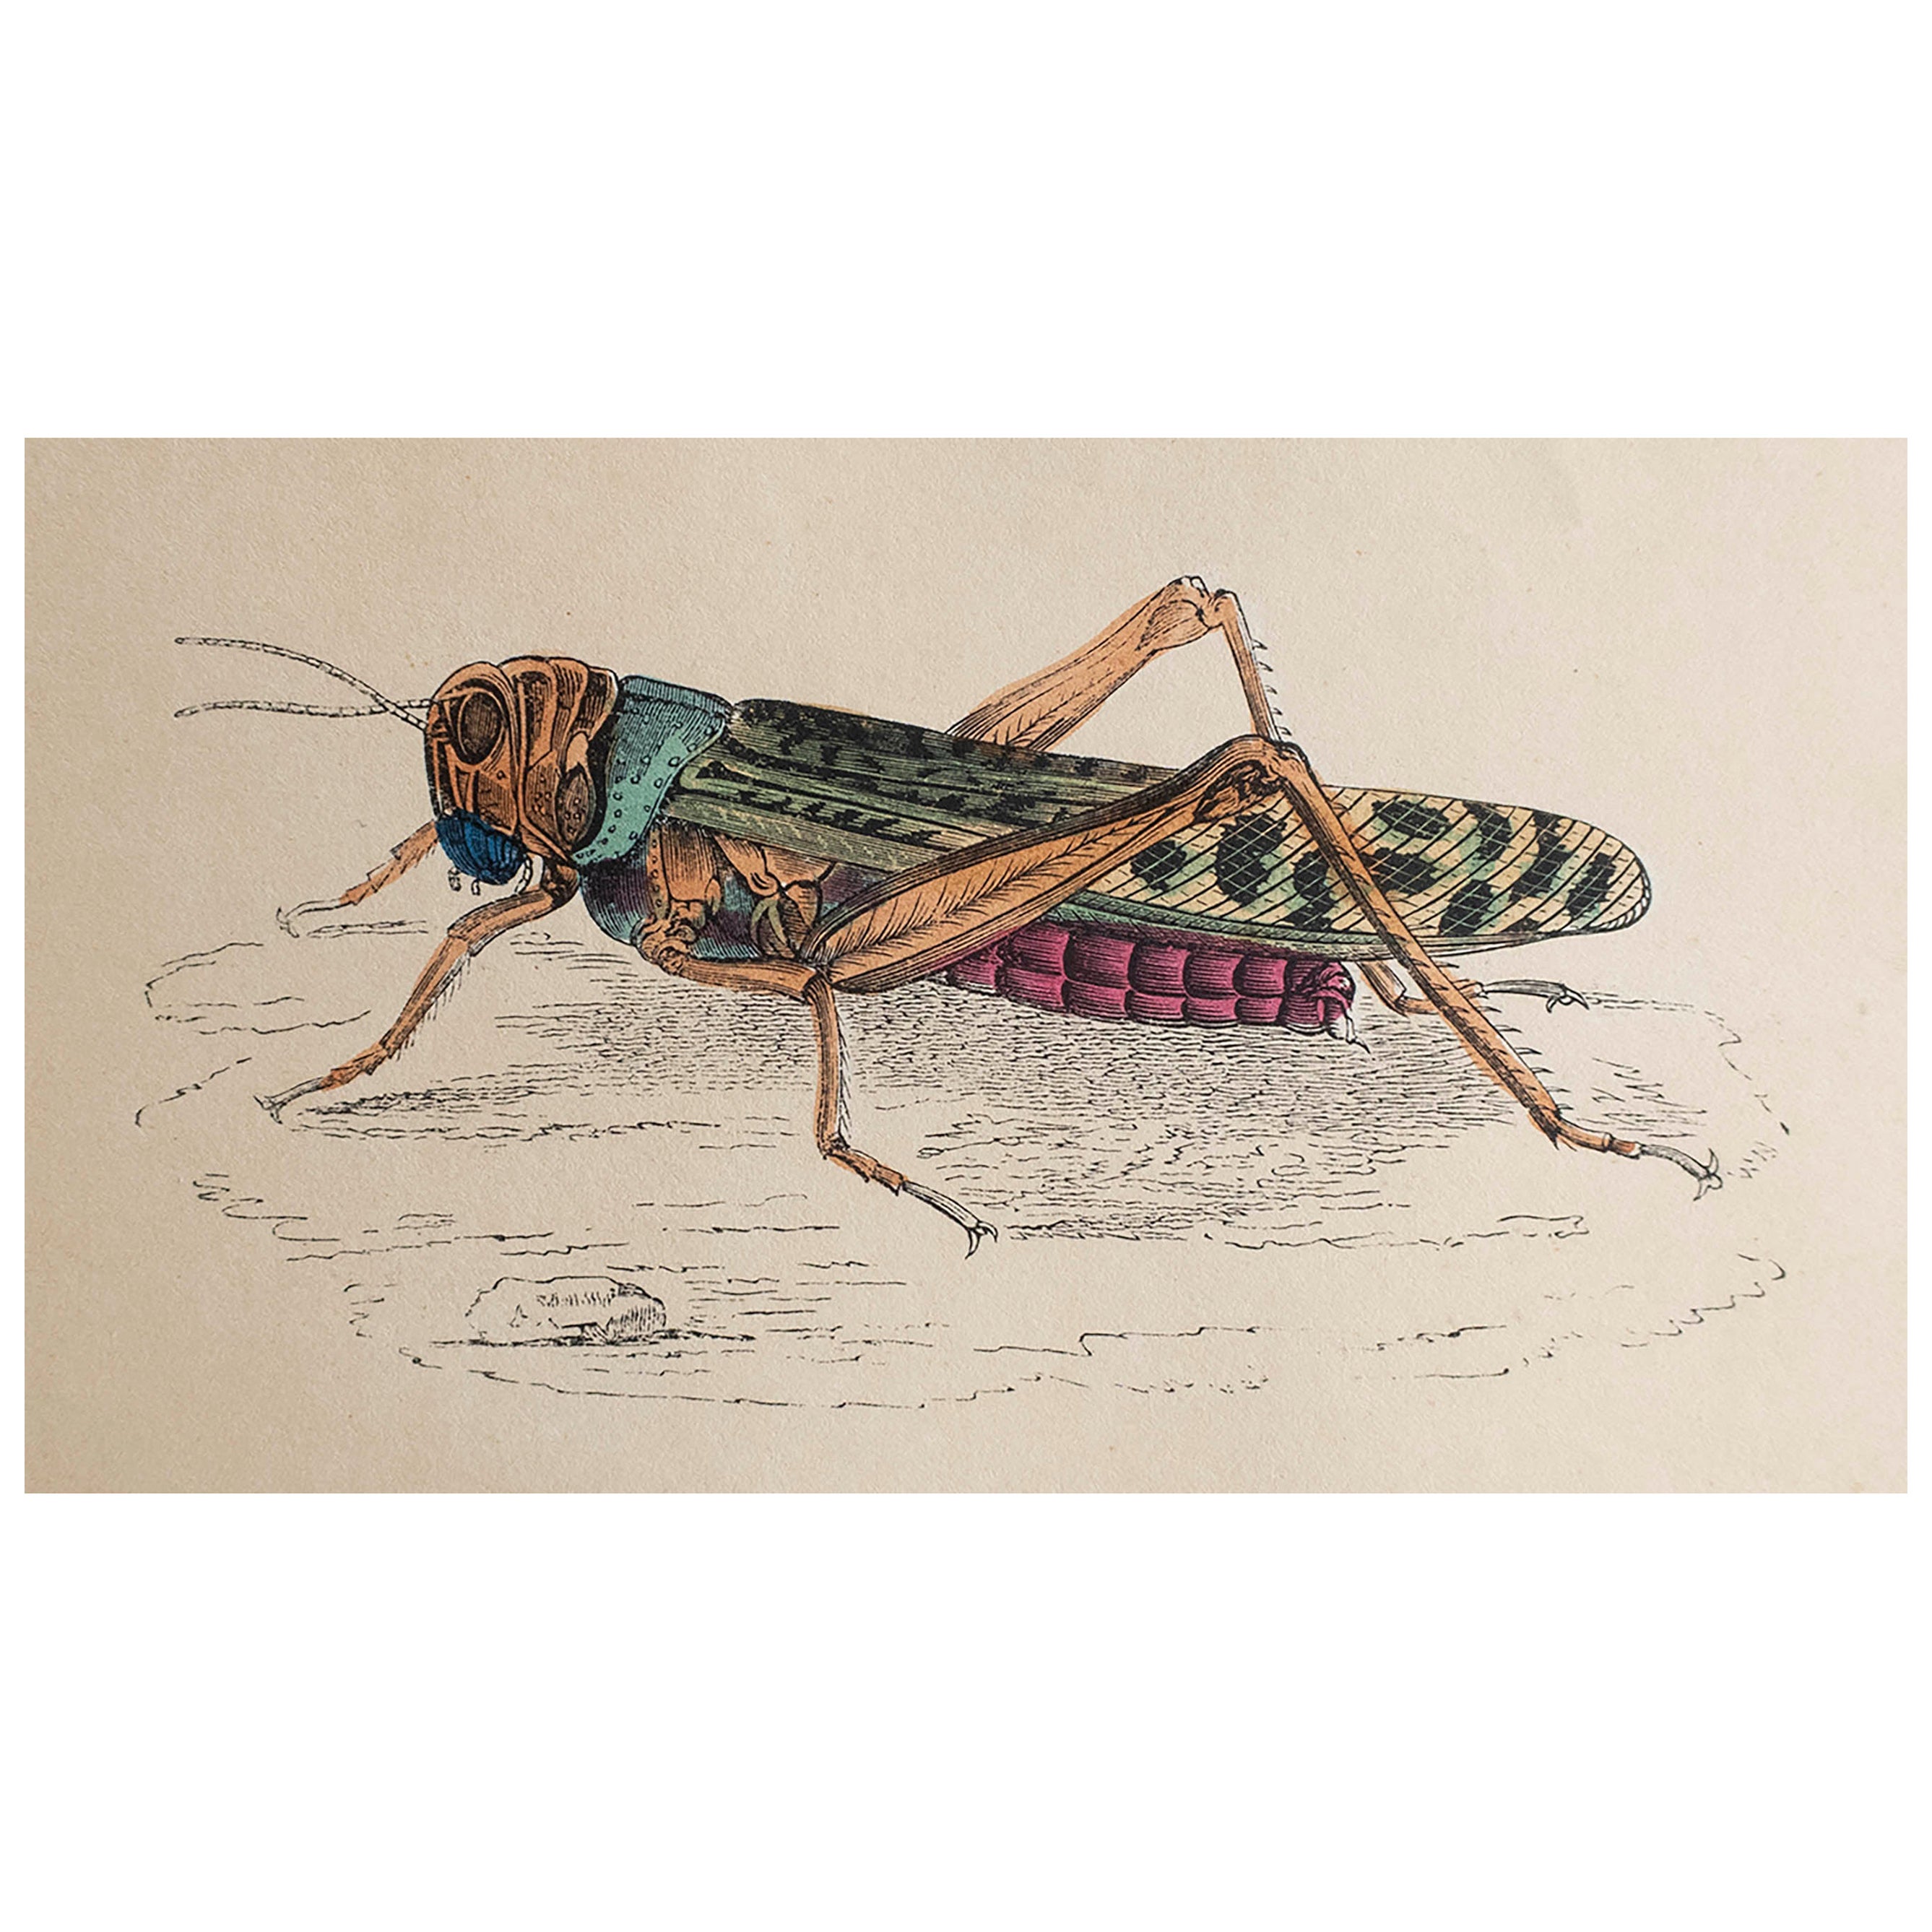  Original Antique Print of A Locust, circa 1850 For Sale